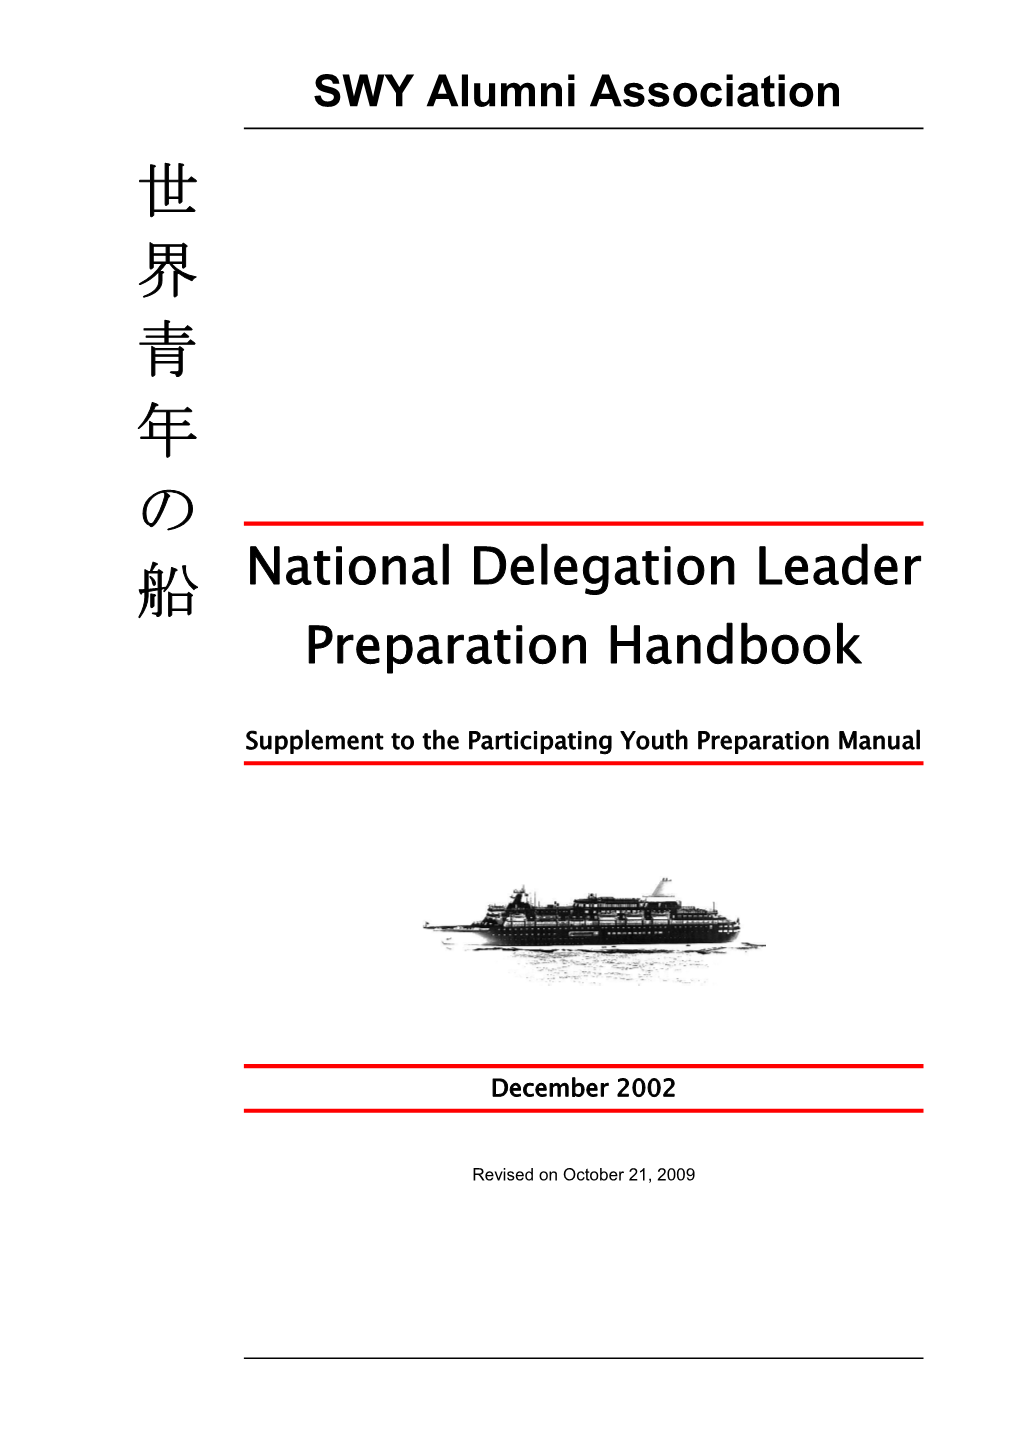 National Delegation Leader Preparation Handbook